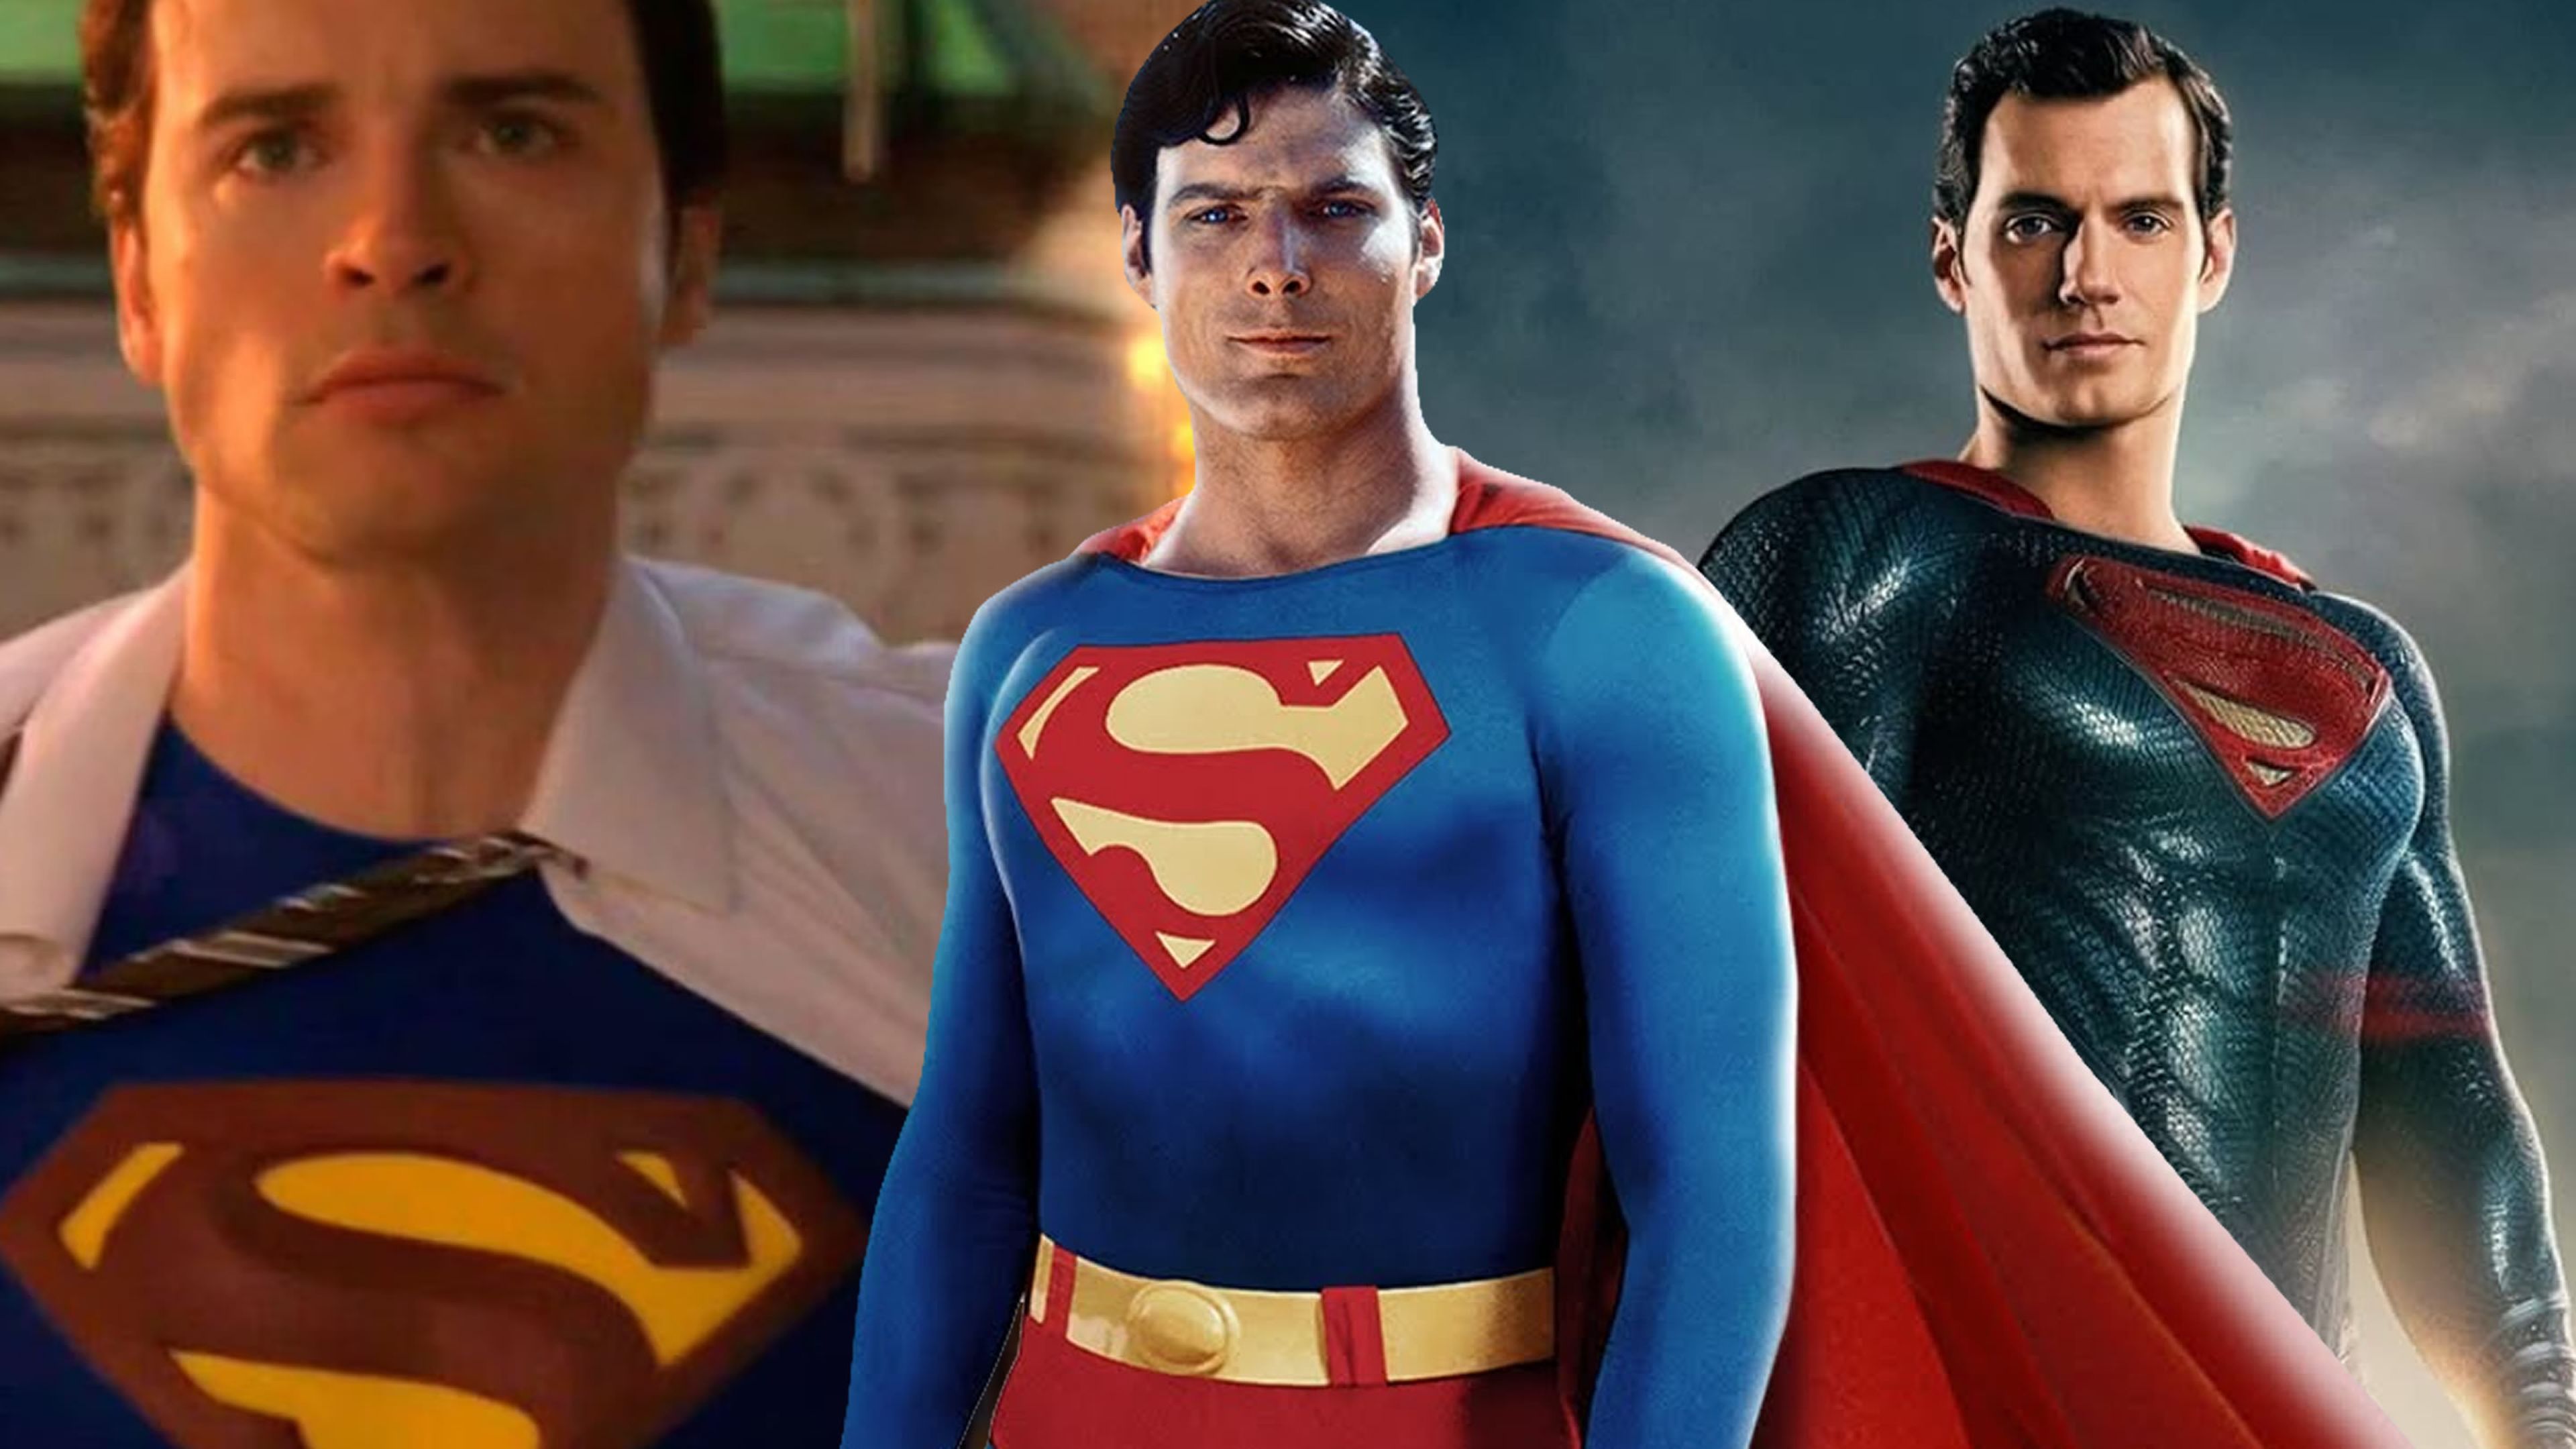 Actores que han interpretado a Superman